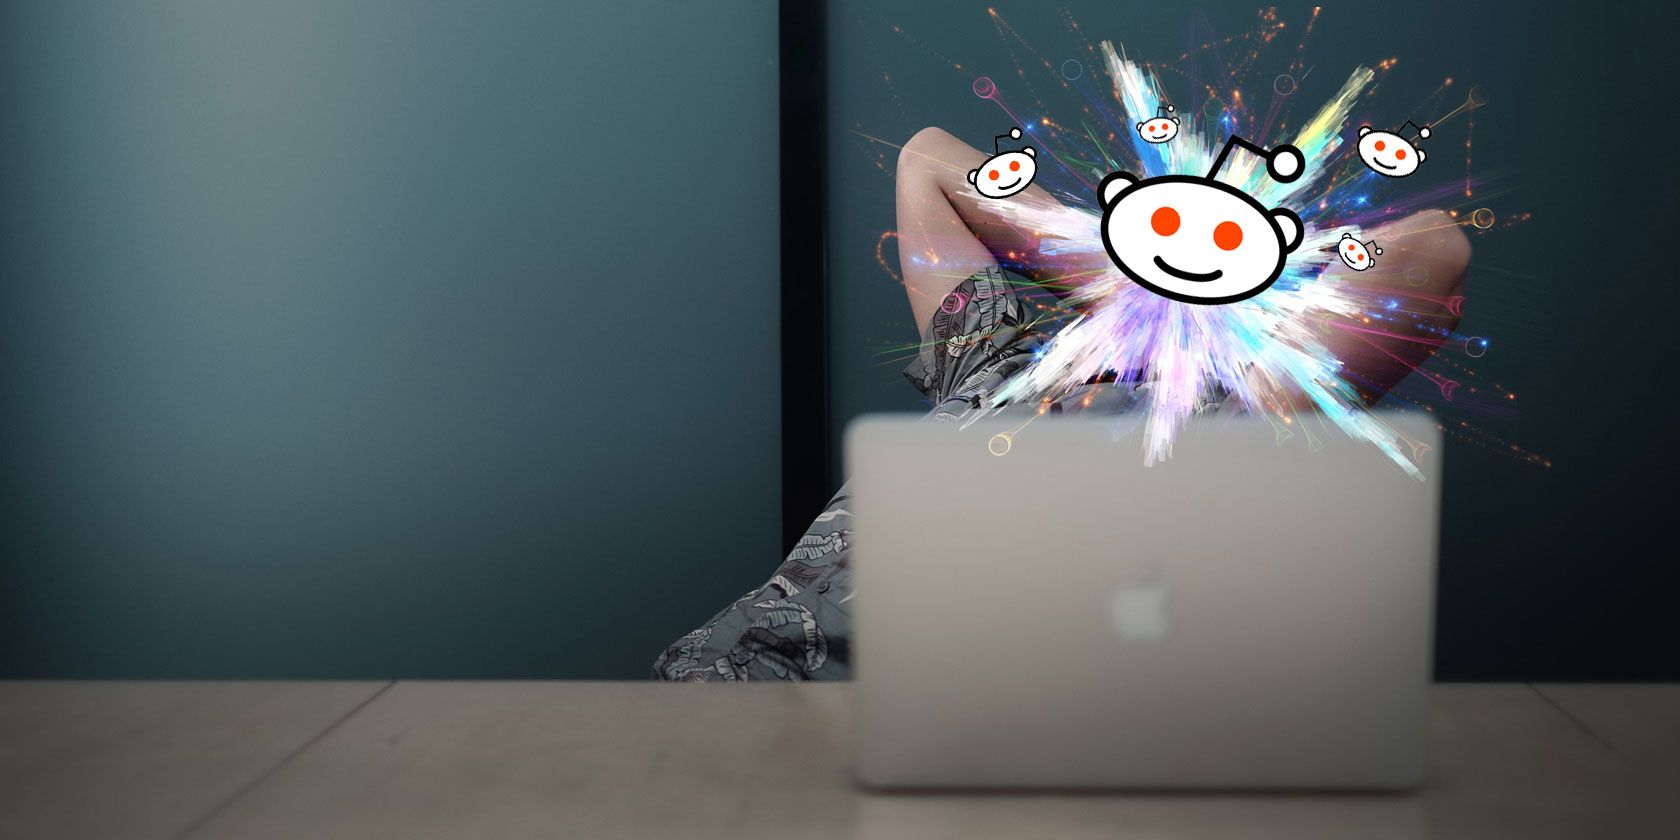 reddit best free mac cleaner 2018